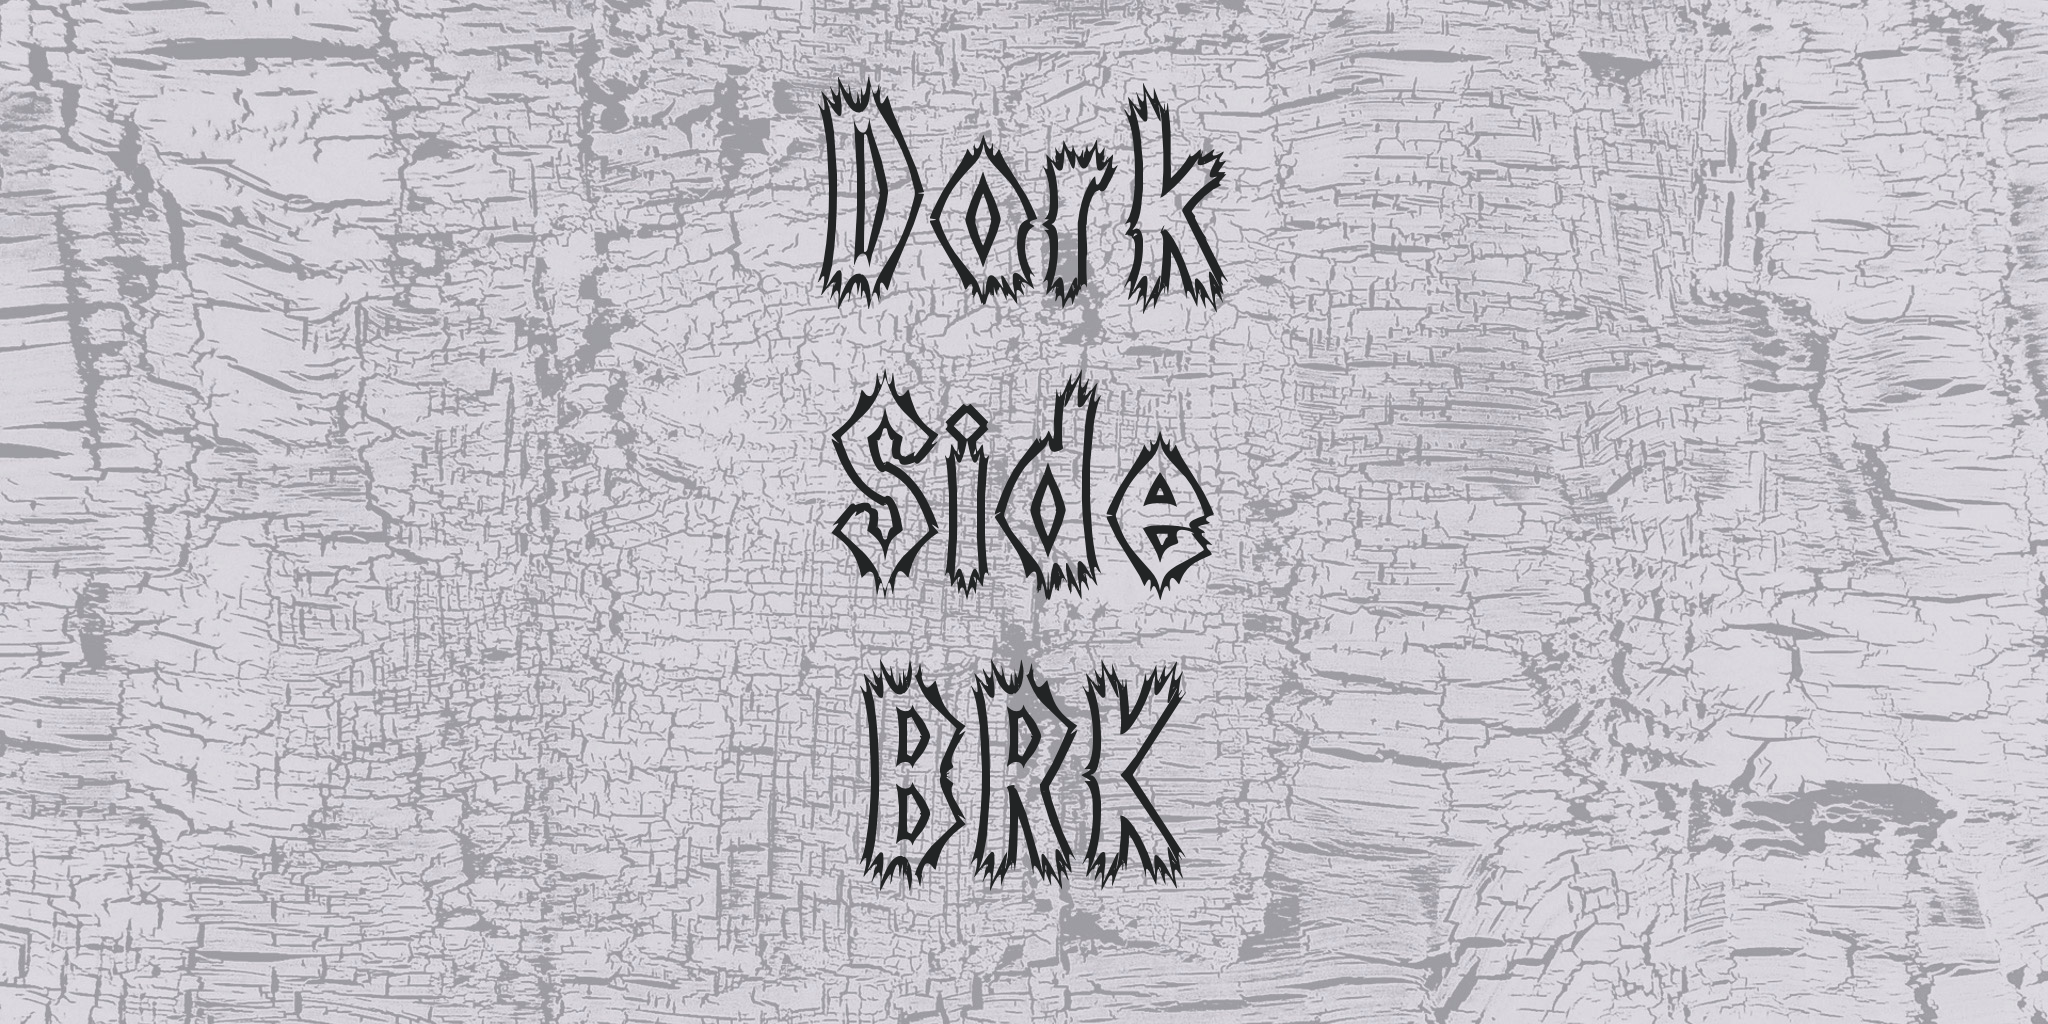 Dark Side Brk